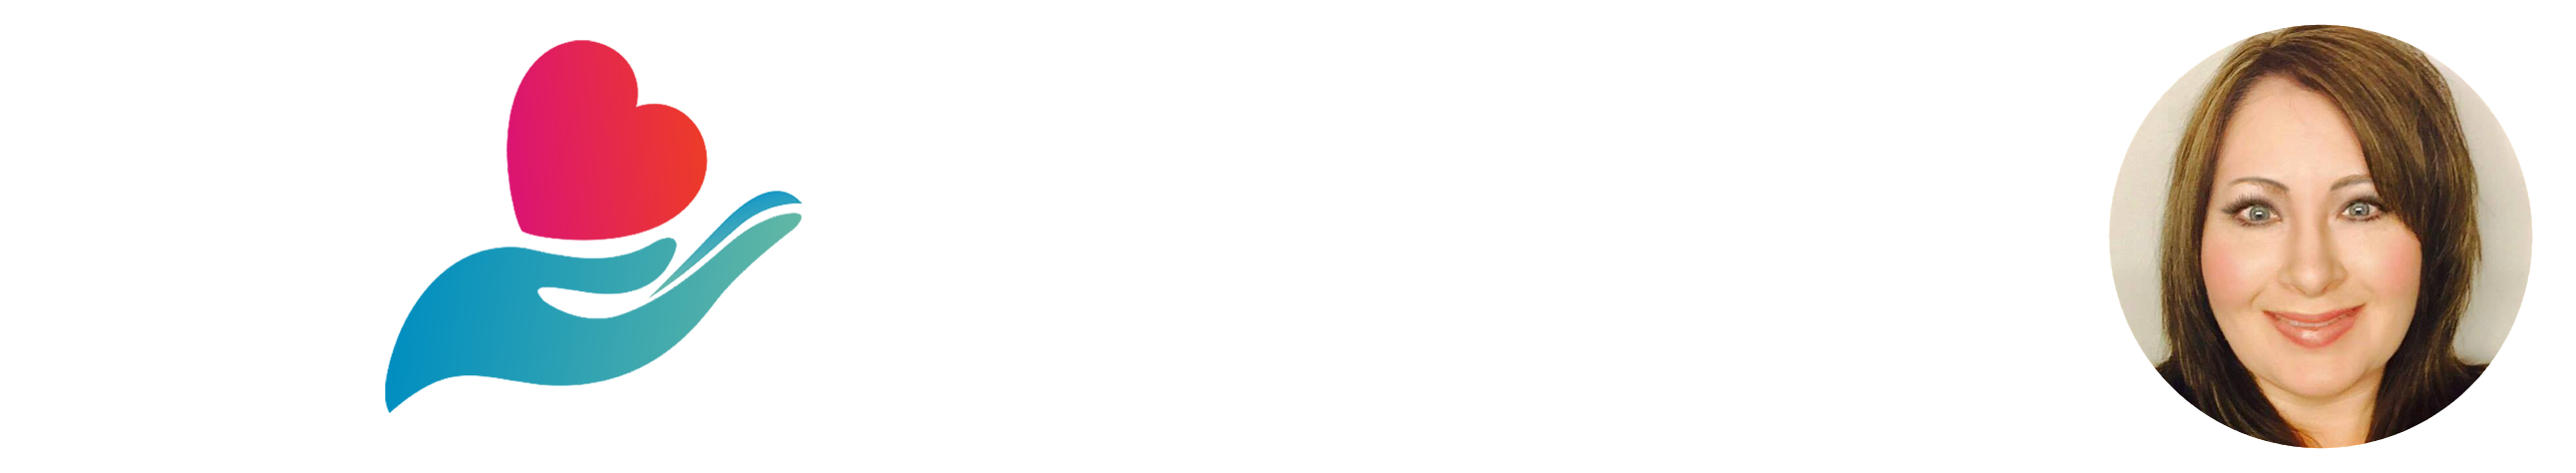 Burns Insurance Group